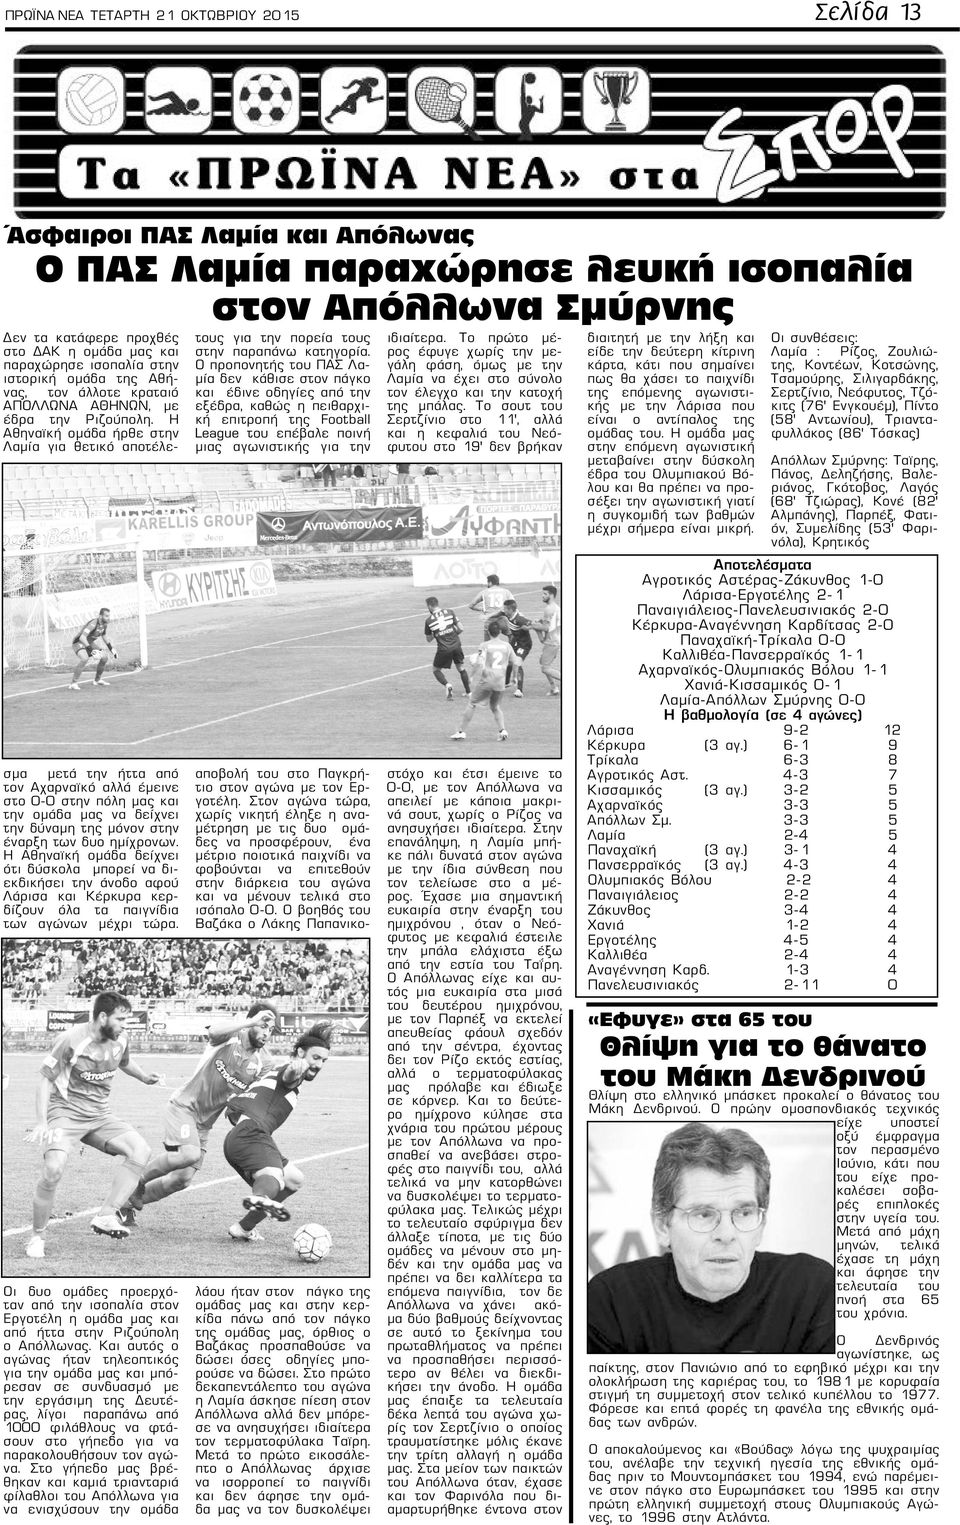 Η Αθηναϊκή ομάδα ήρθε στην Λαμία για θετικό αποτέλεσμα μετά την ήττα από τον Αχαρναϊκό αλλά έμεινε στο 0-0 στην πόλη μας και την ομάδα μας να δείχνει την δύναμη της μόνον στην έναρξη των δυο